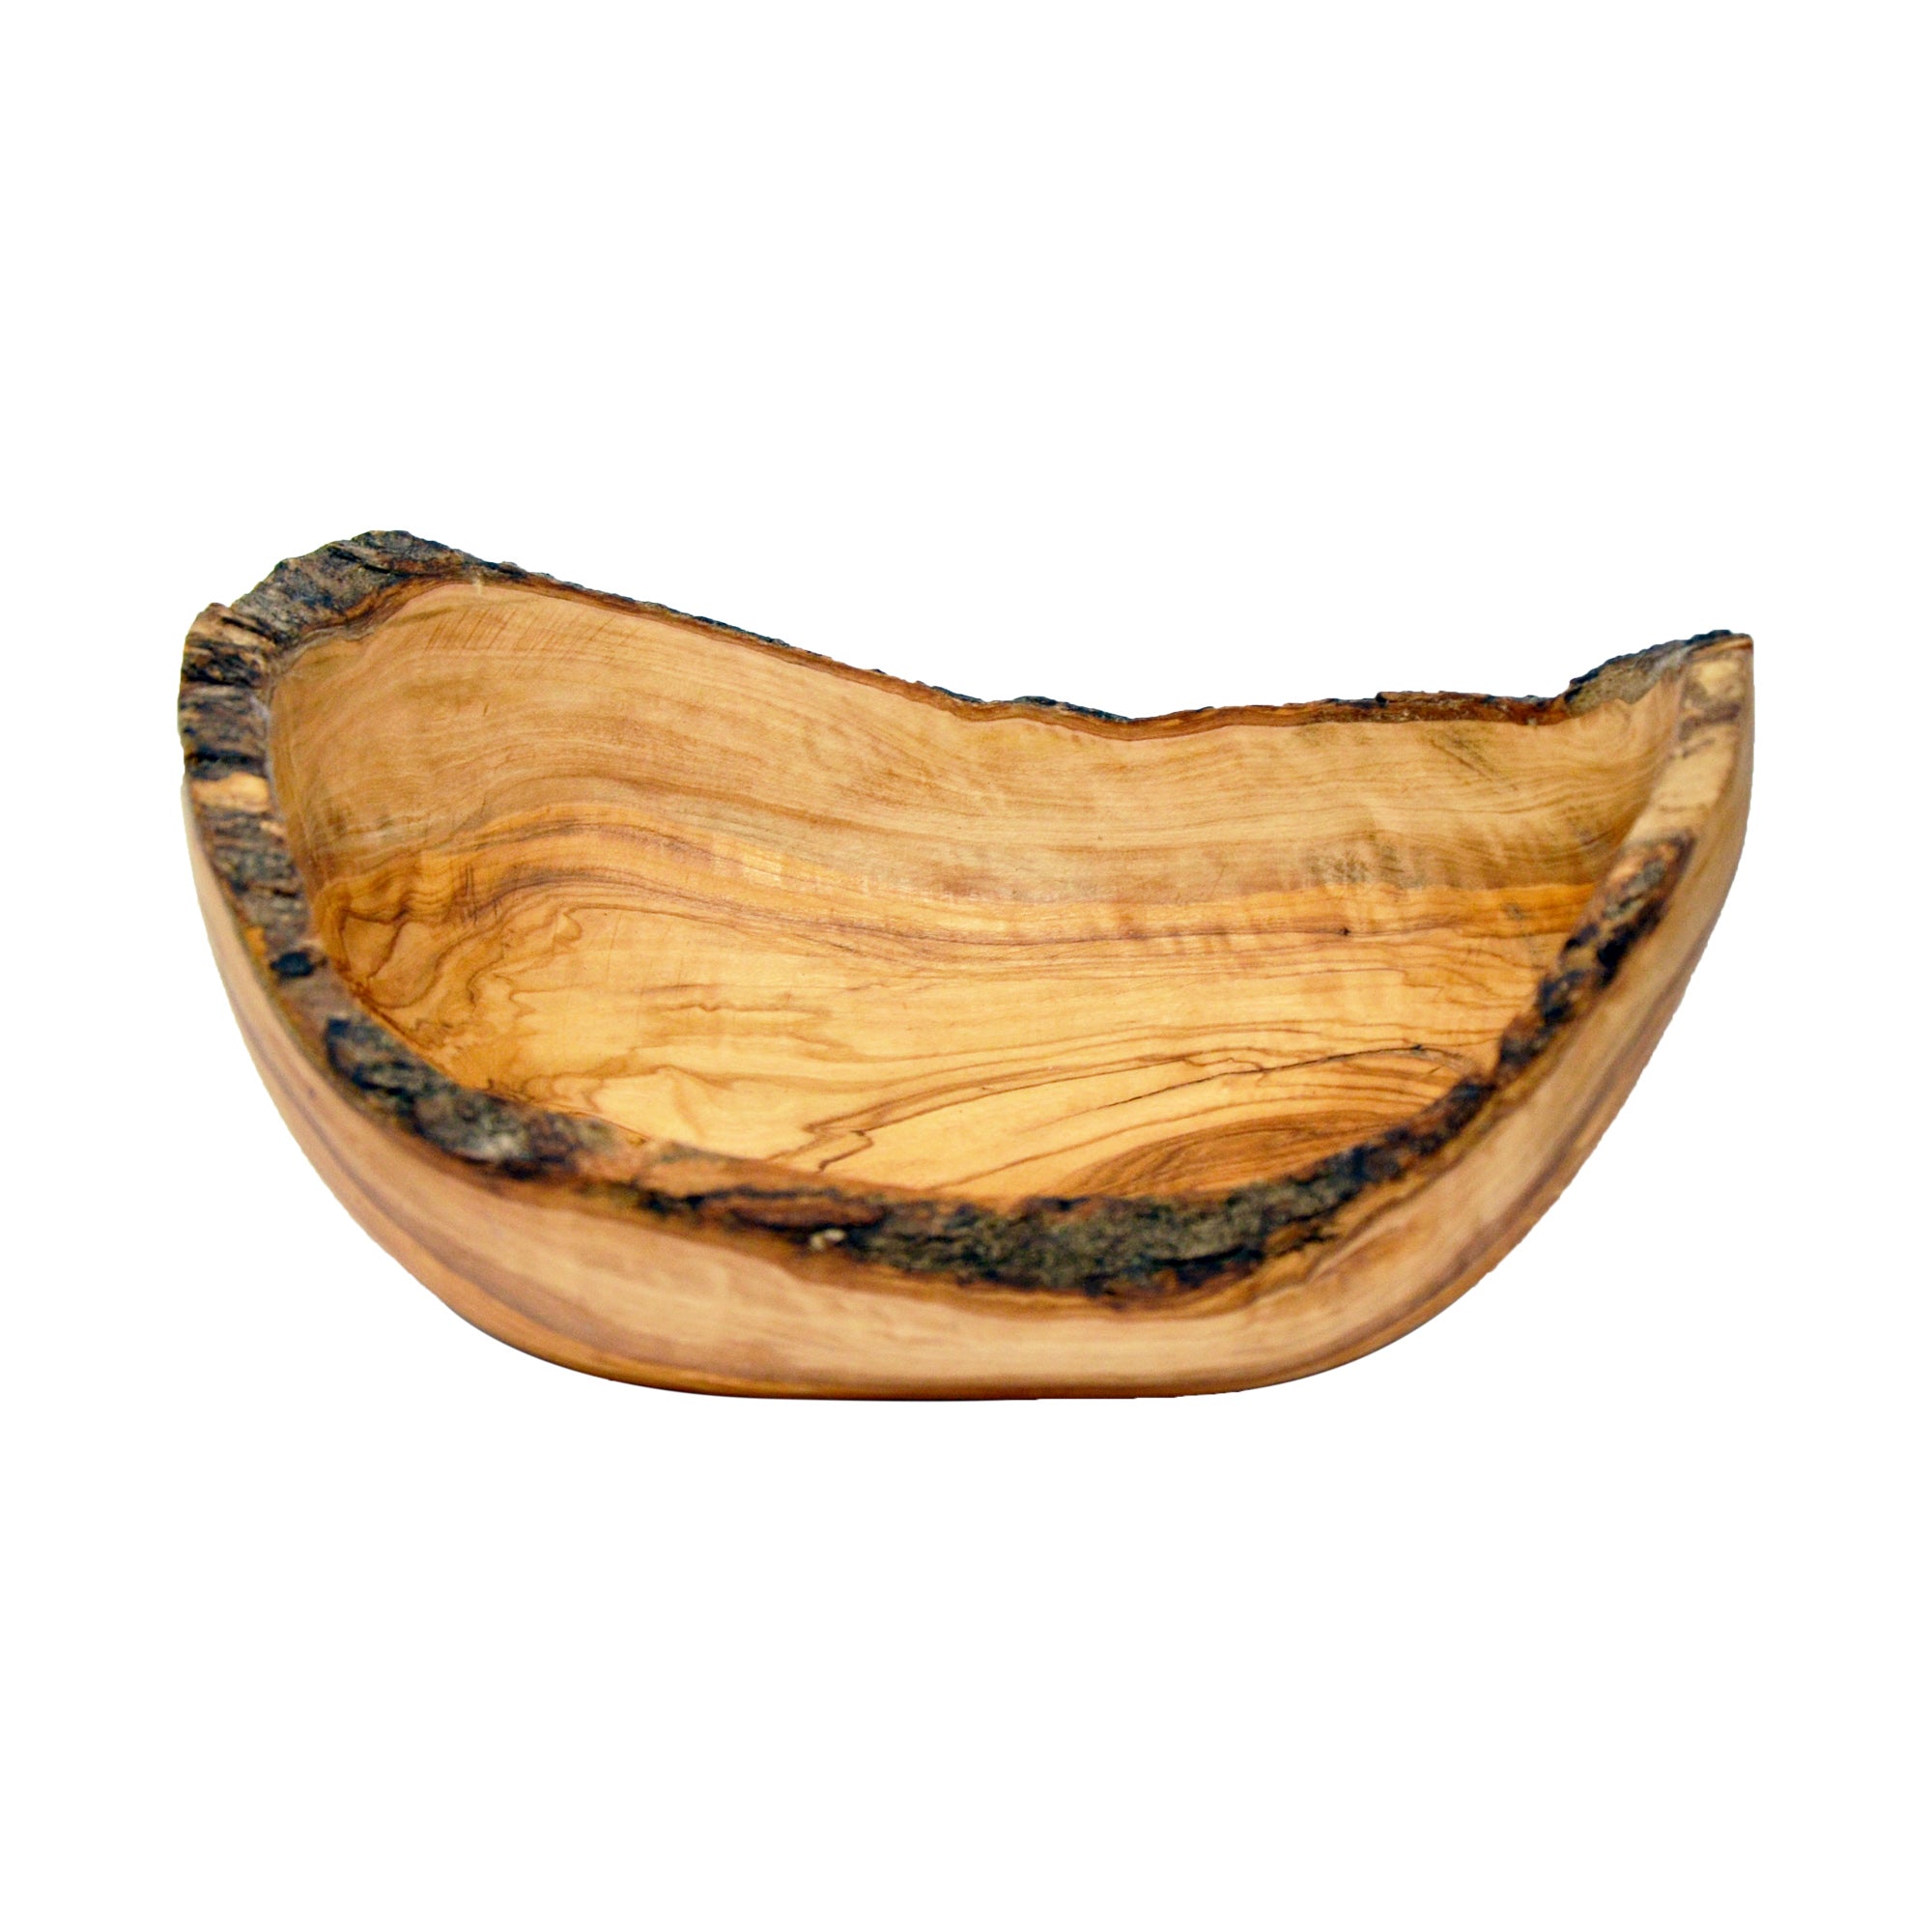 Ciotole in legno - Olivo con corteccia